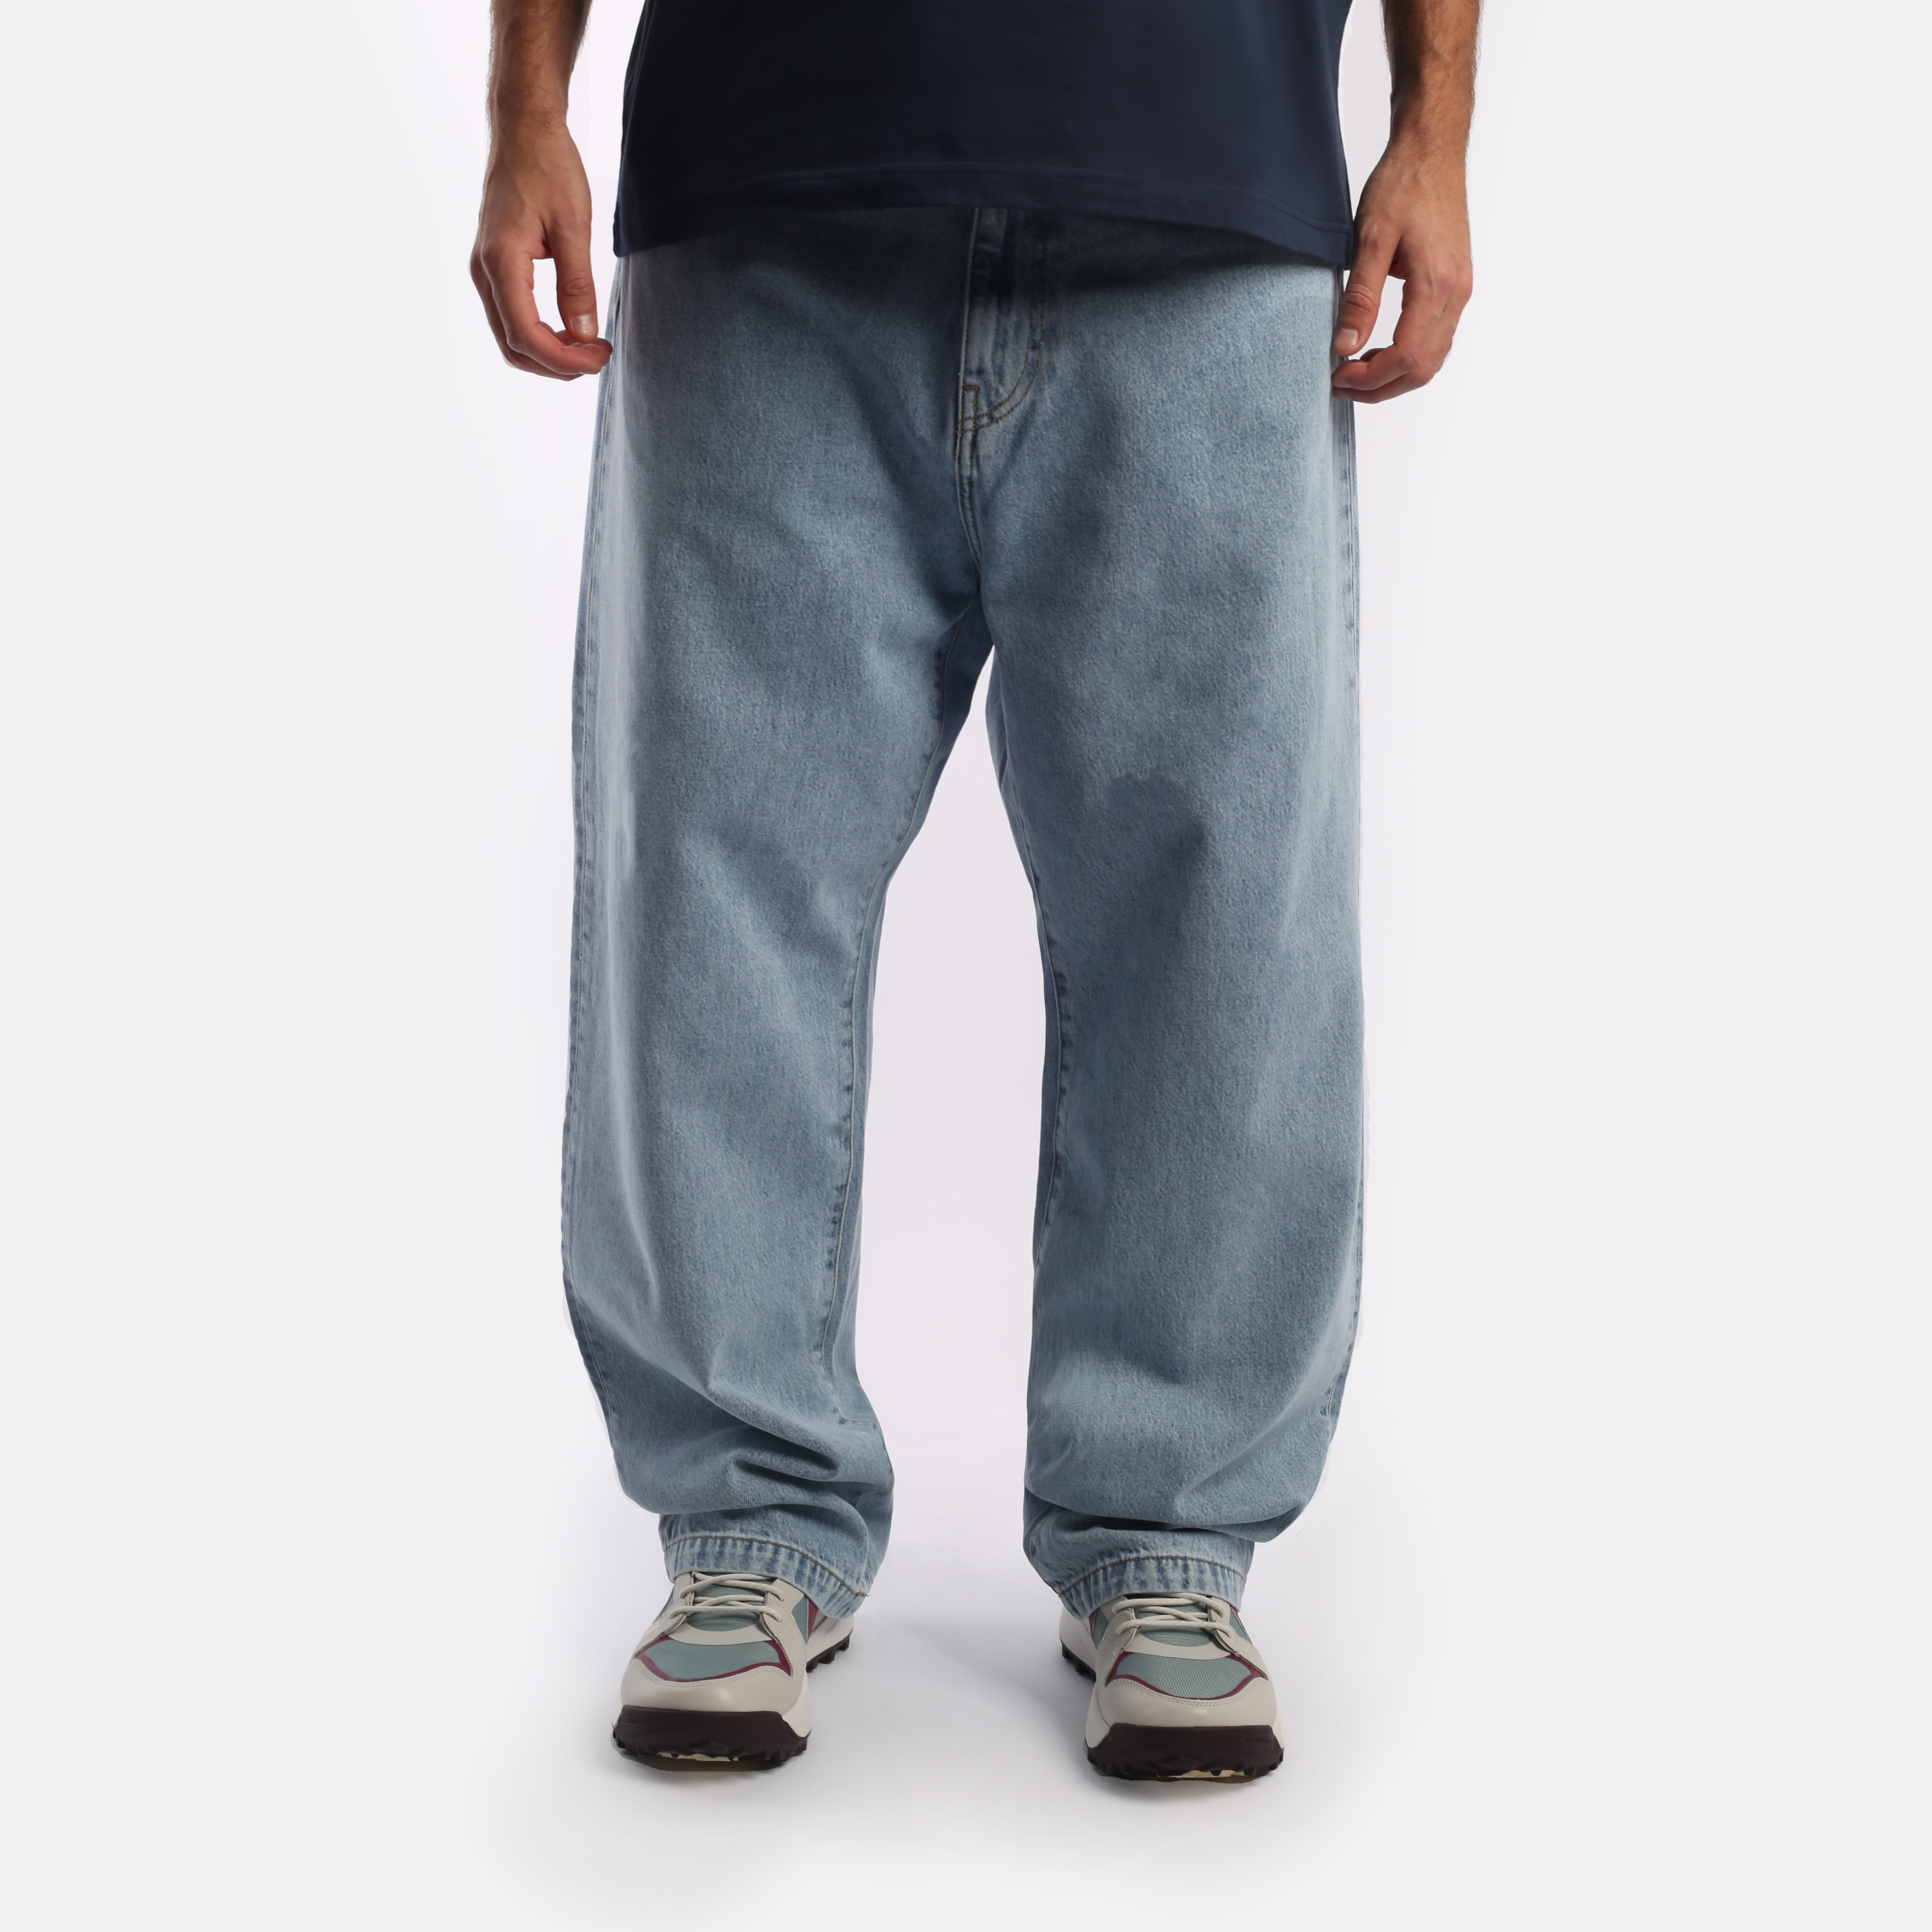 мужские брюки Carhartt WIP Robertson  (I030468-blue)  - цена, описание, фото 1